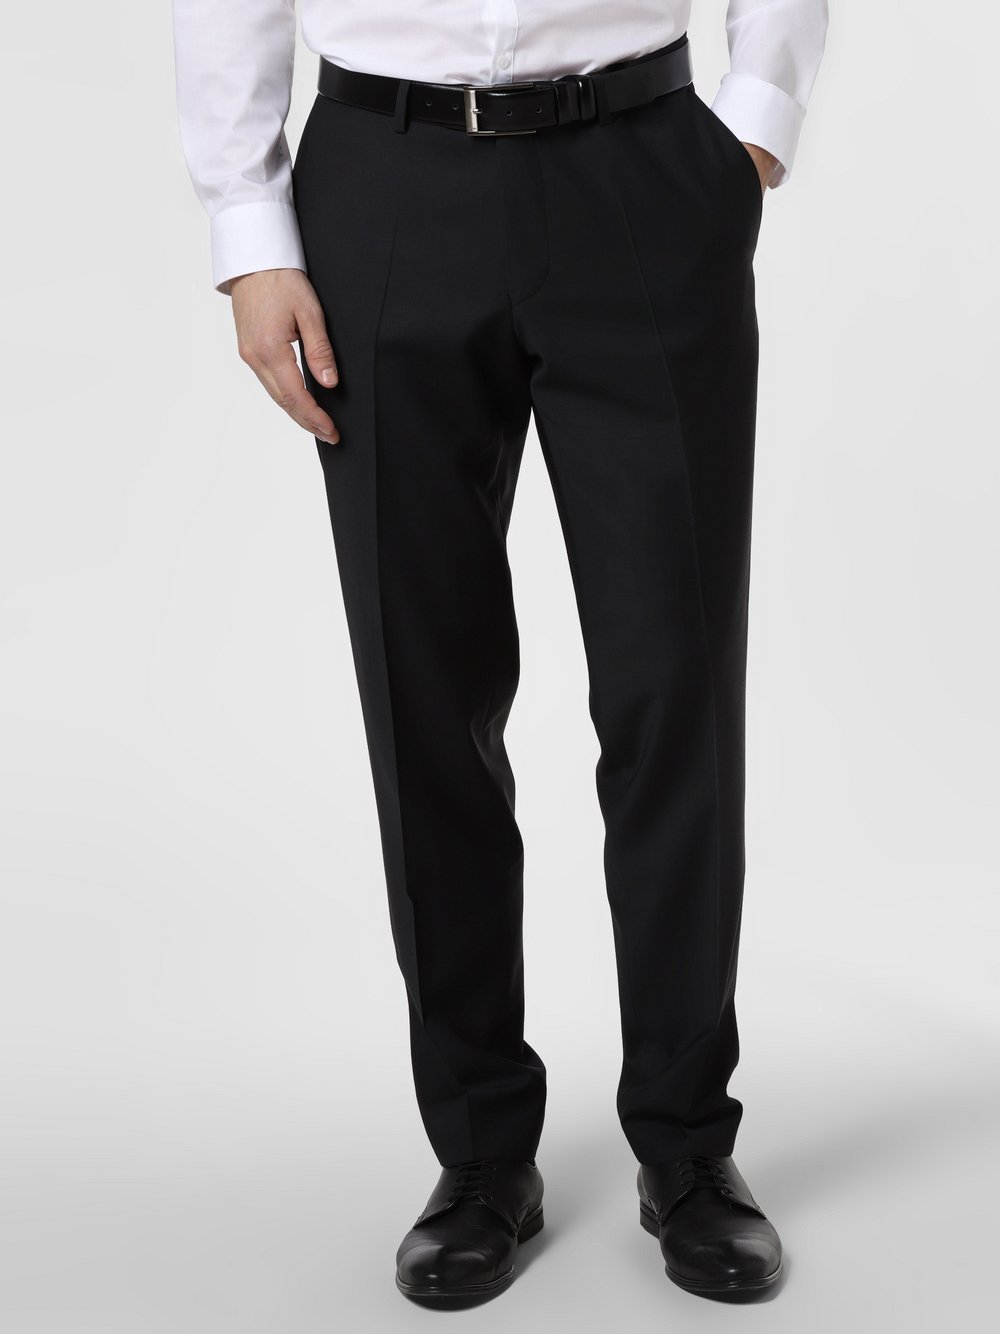 Finshley & Harding London - Męskie spodnie od garnituru modułowego – Grant Athletic, czarny